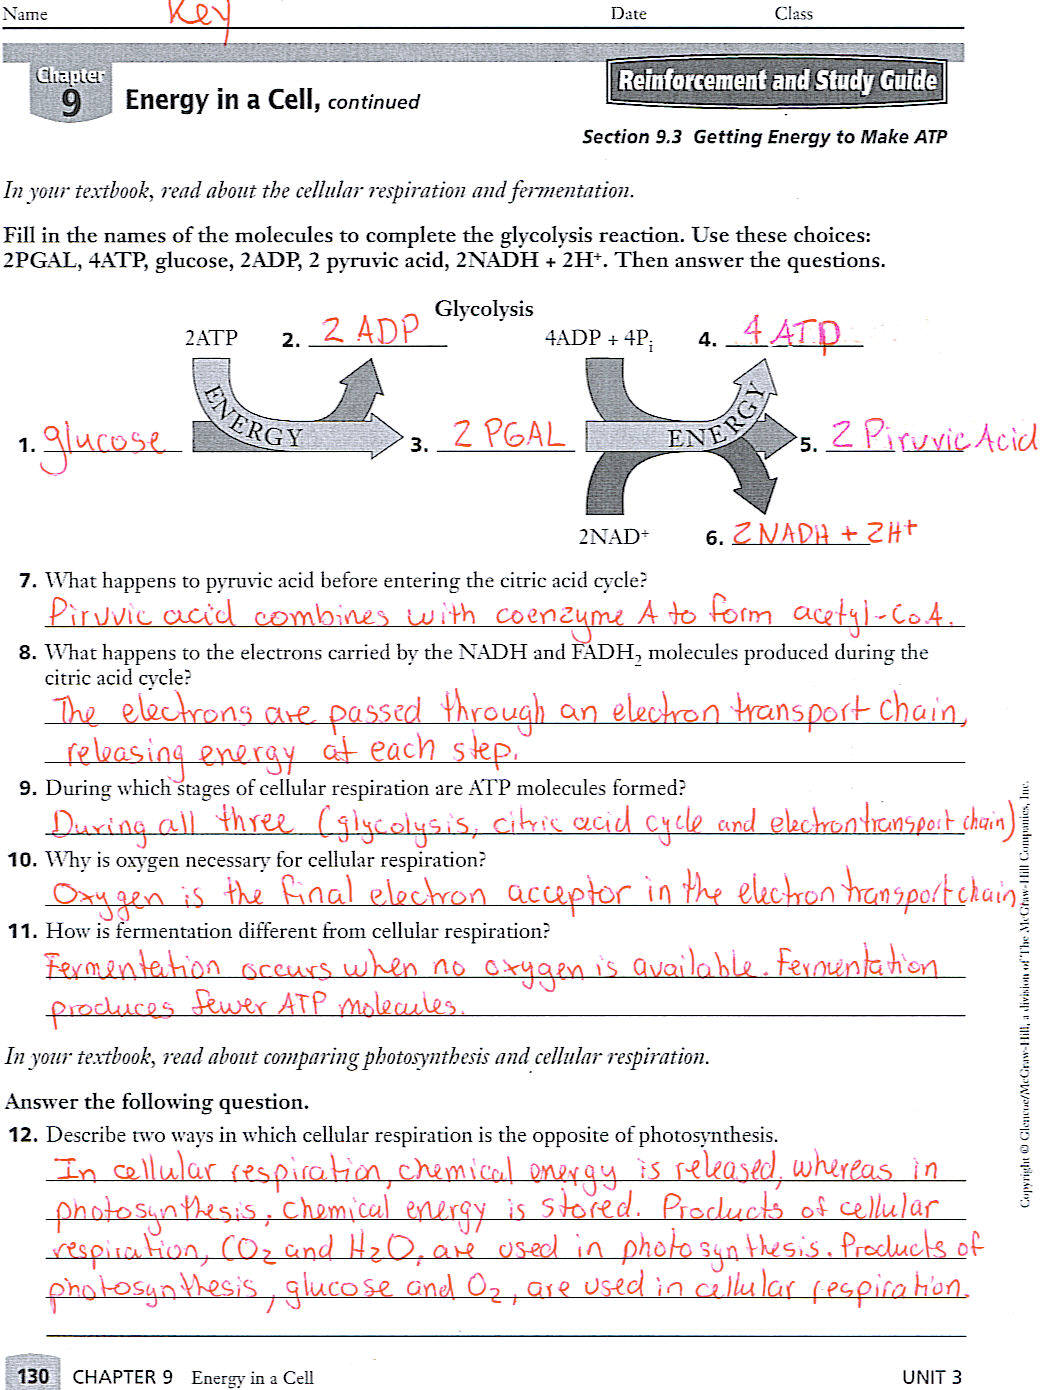 9th grade biology worksheets pdf